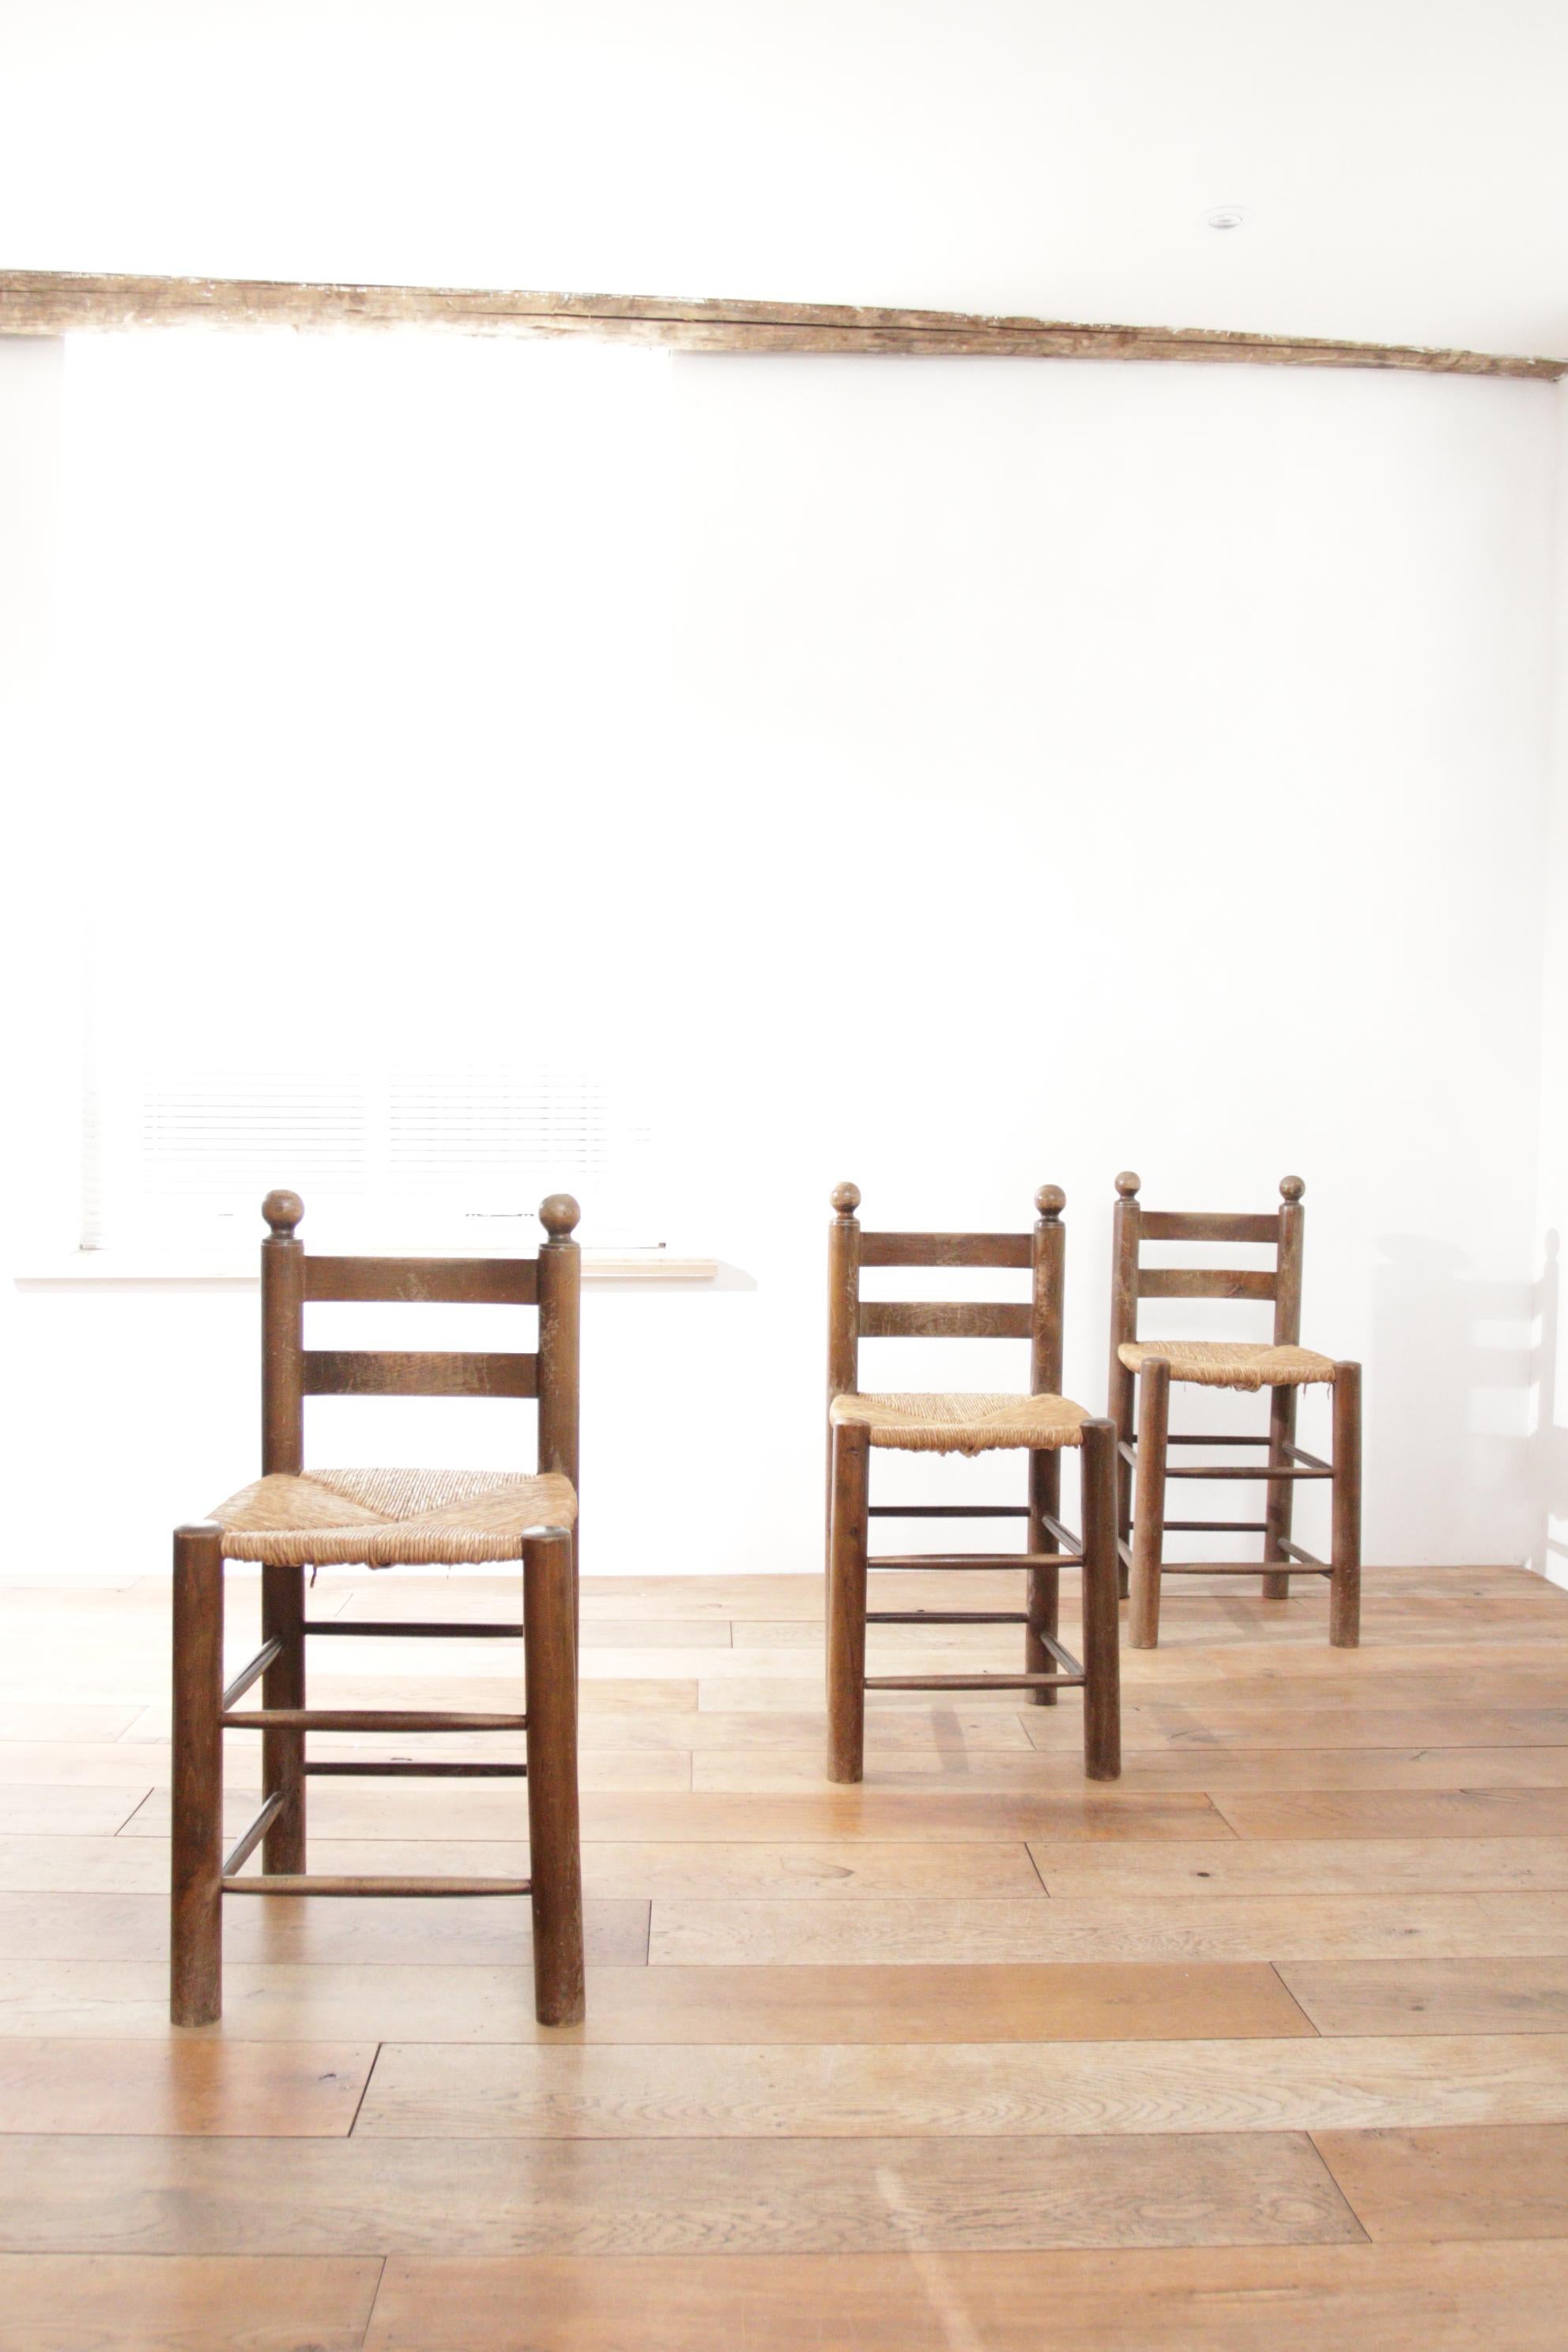 Schöne Stühle aus den 50er Jahren aus massivem Eichenholz mit geflochtener Sitzfläche.
Sie passen perfekt zum Stil von Designern wie Charlotte Perriand, Jean Royère und Charles Dudouyt.
Durch die Verwendung von ausschließlich natürlichen